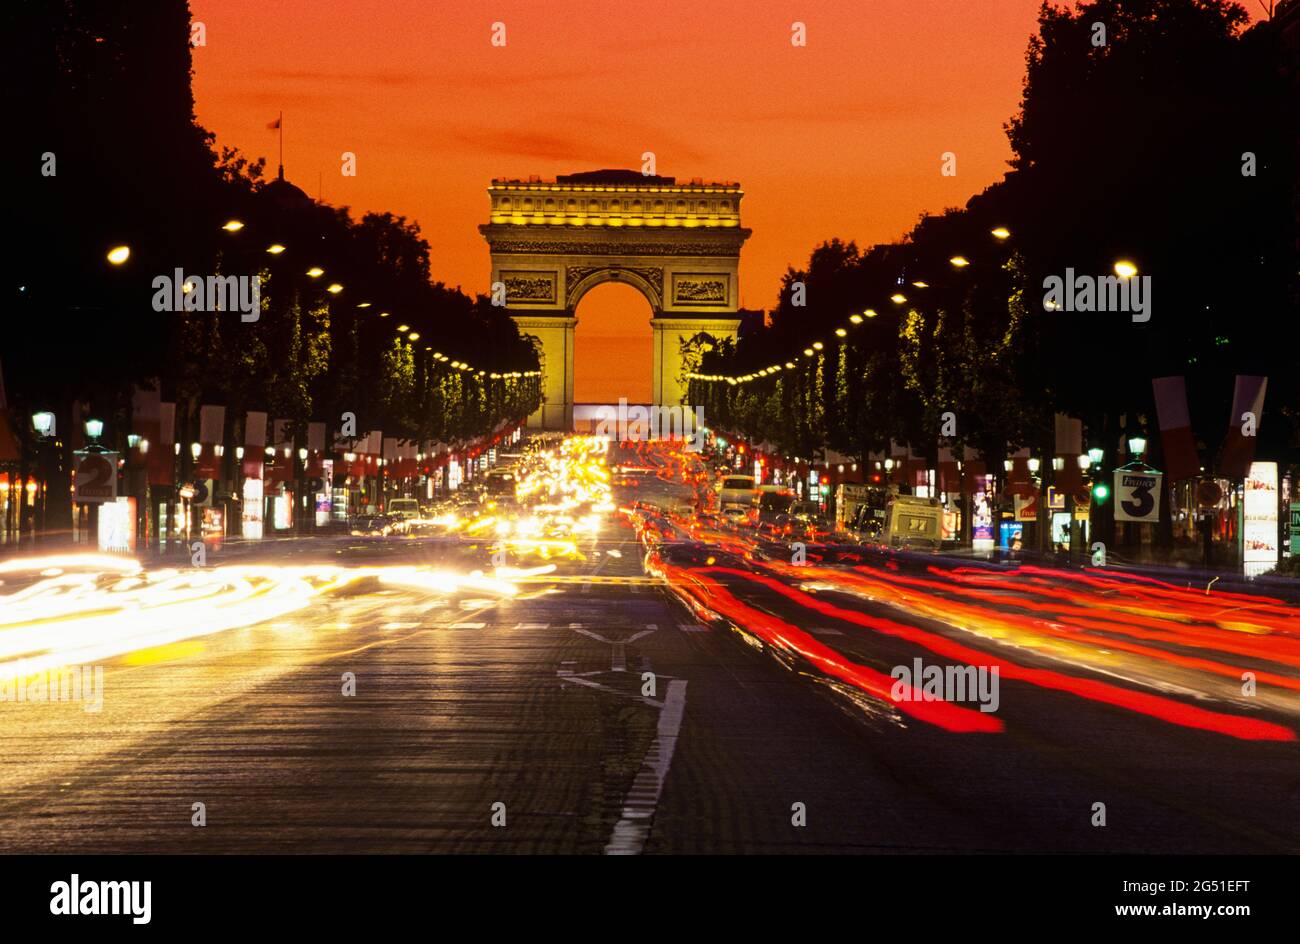 Arc de Triomphe at night, Avenue des Champs-Elysees, Paris, France Stock Photo